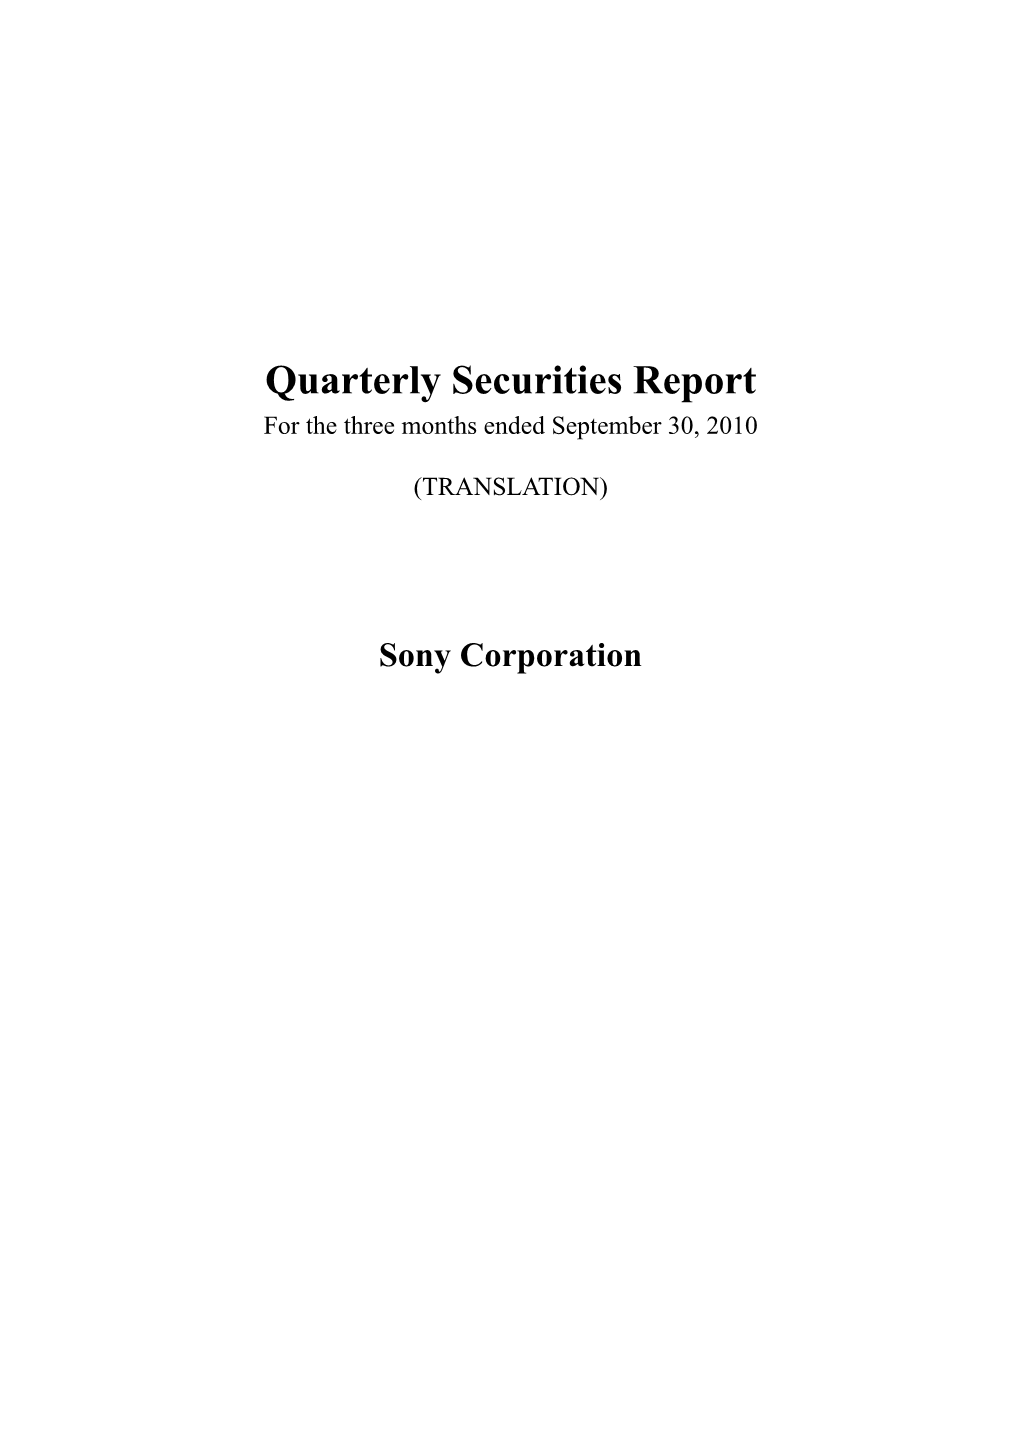 FY2010 2Q Quarterly Securities Report